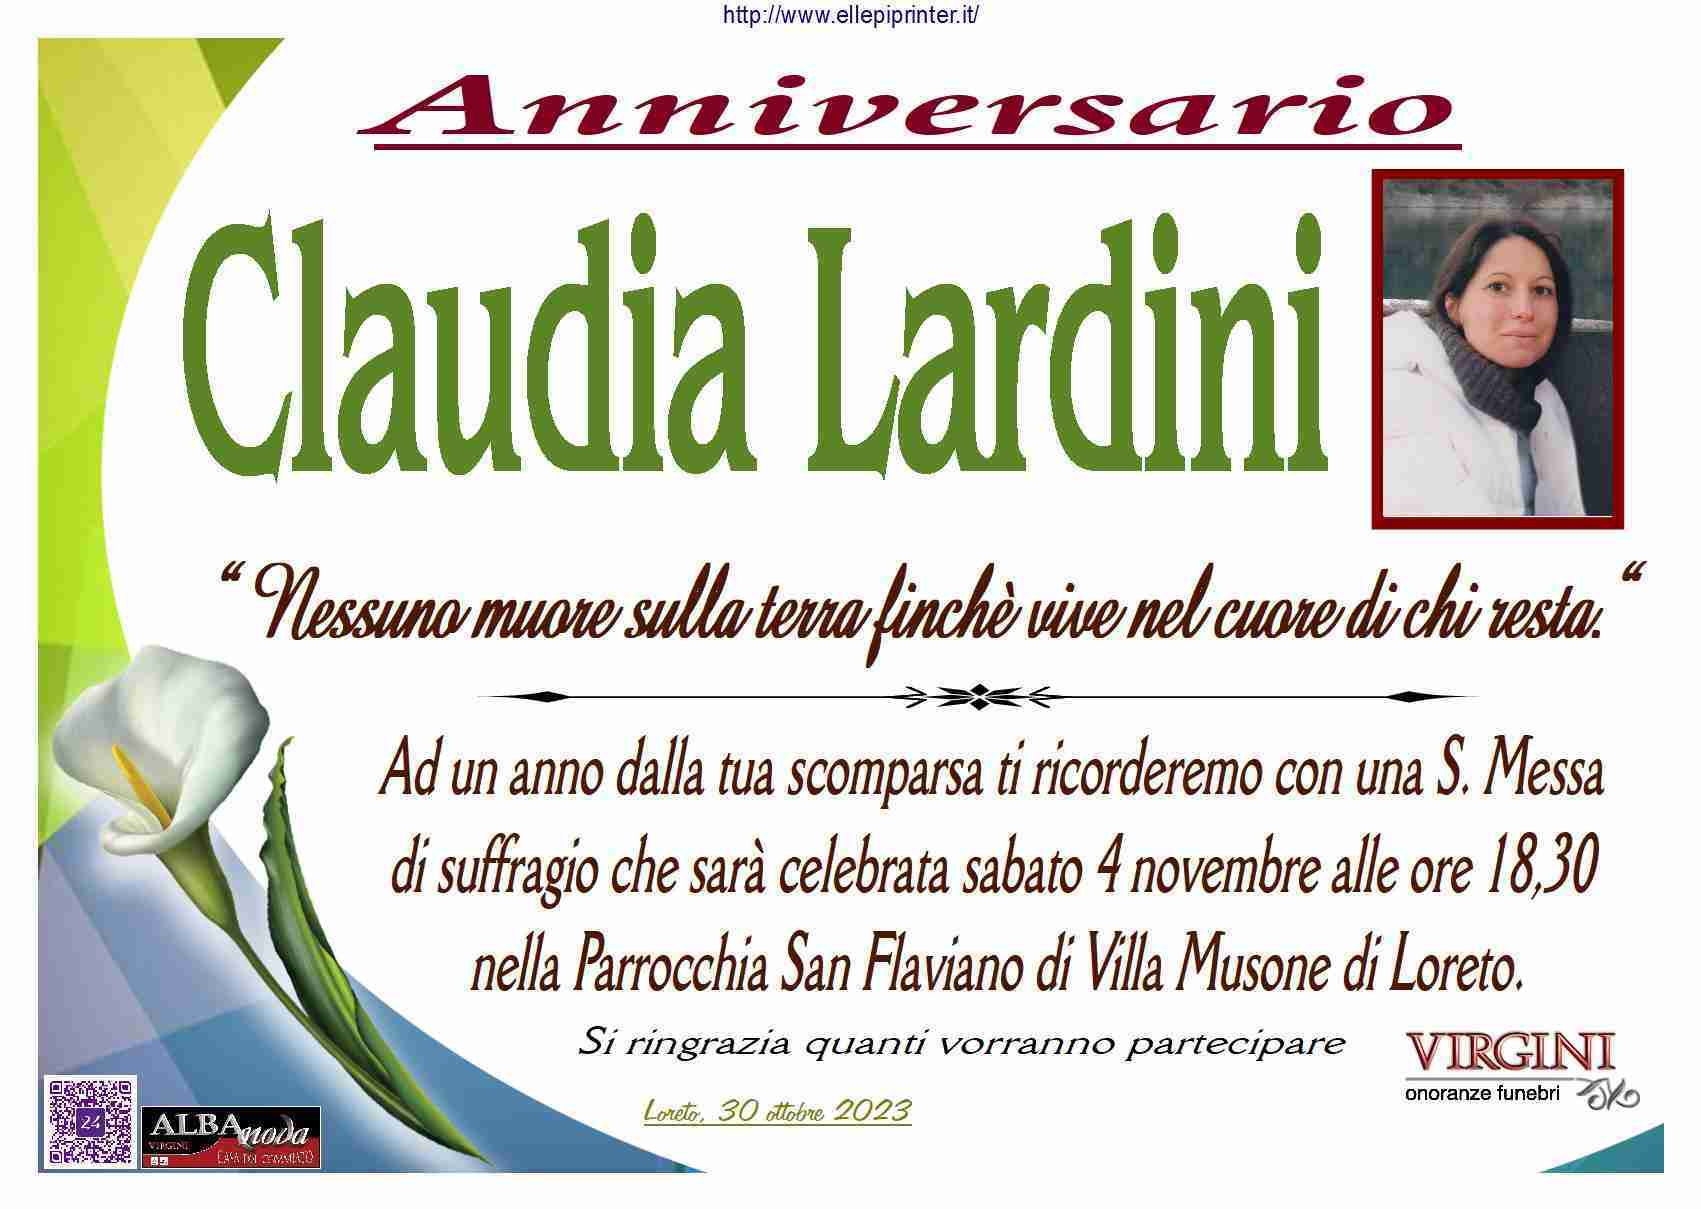 Claudia Lardini